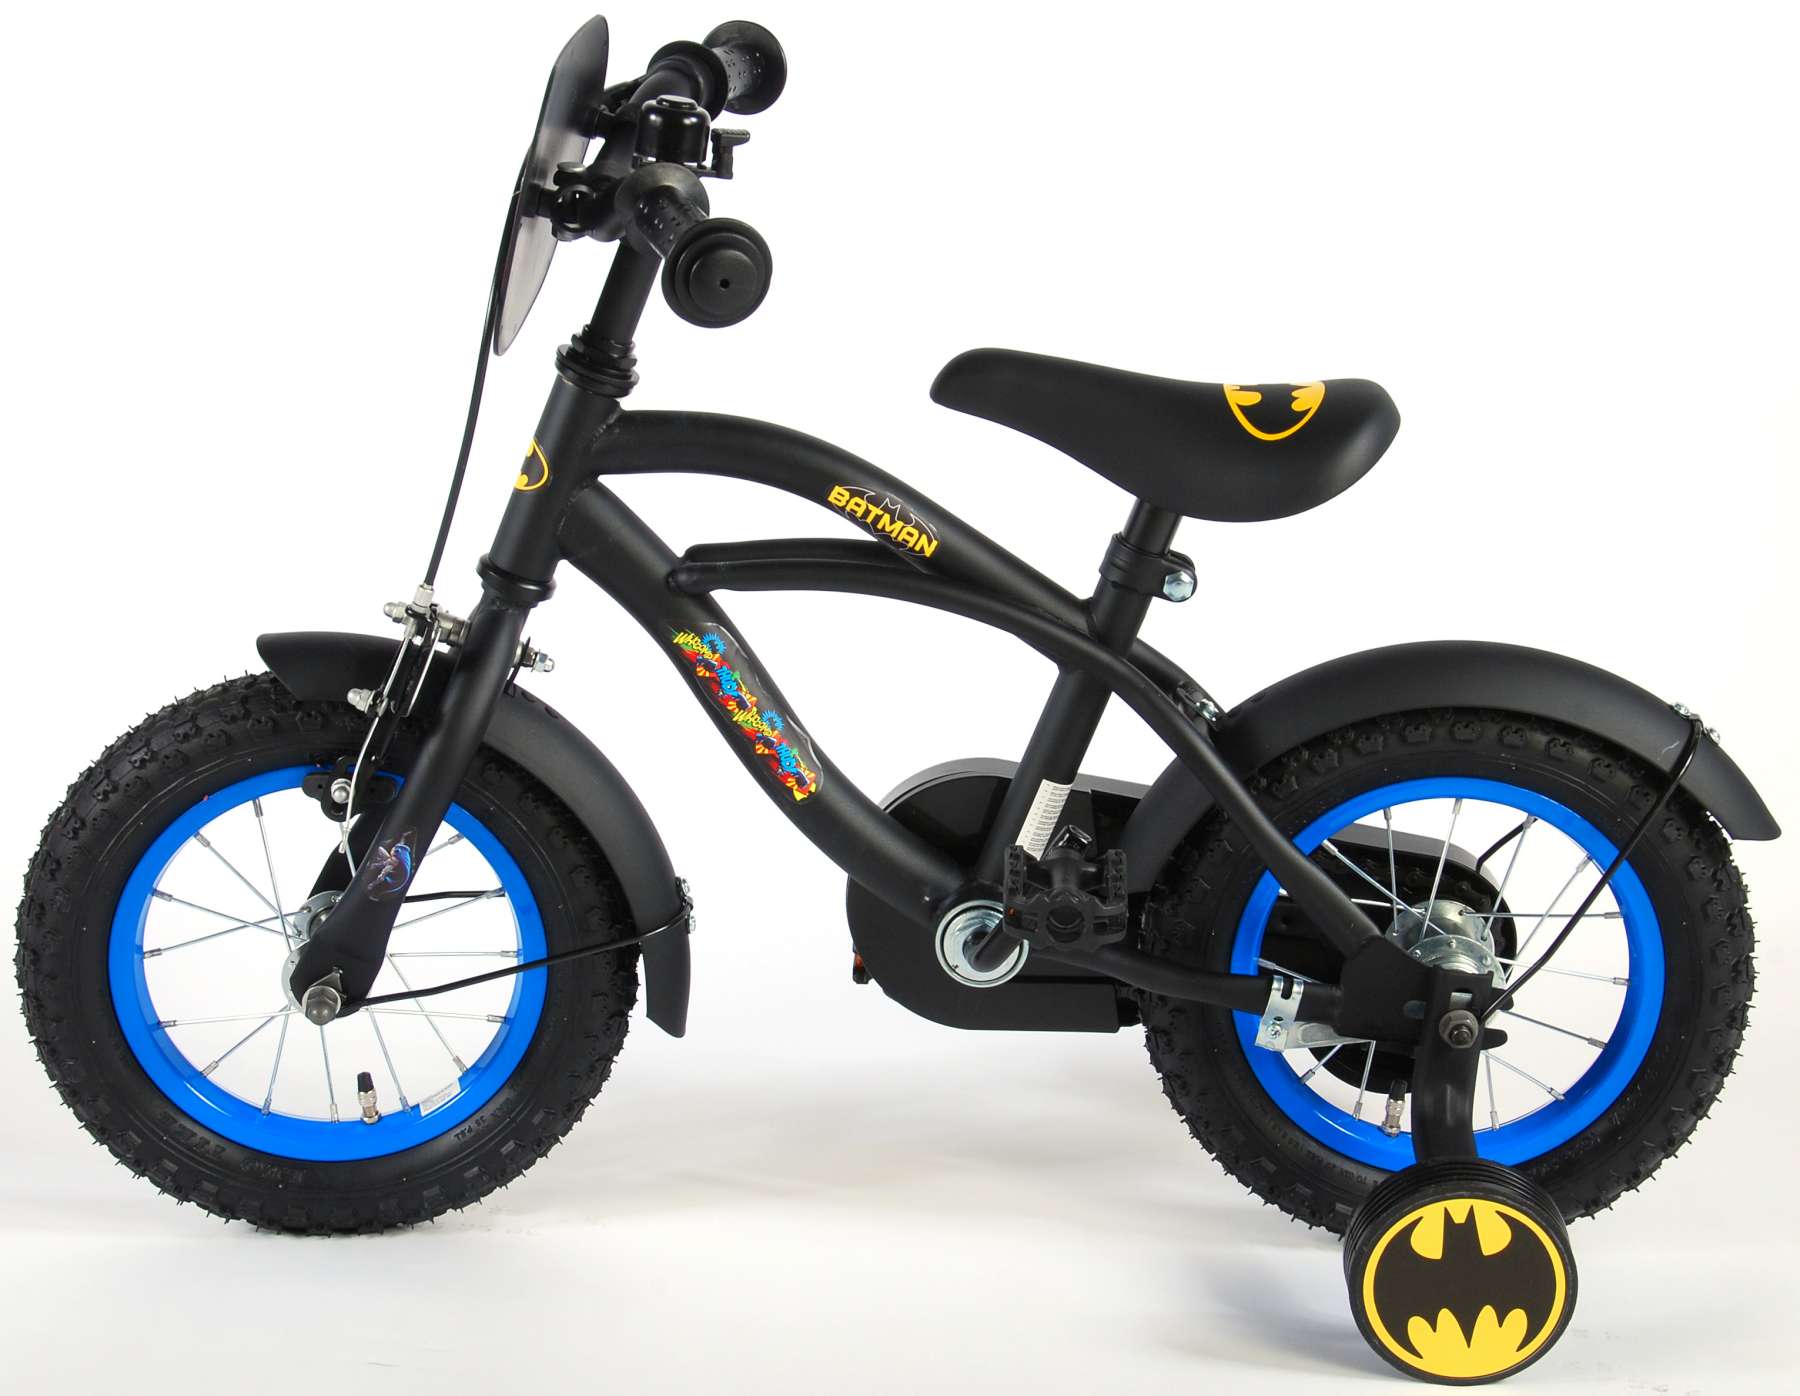 batman kids bike